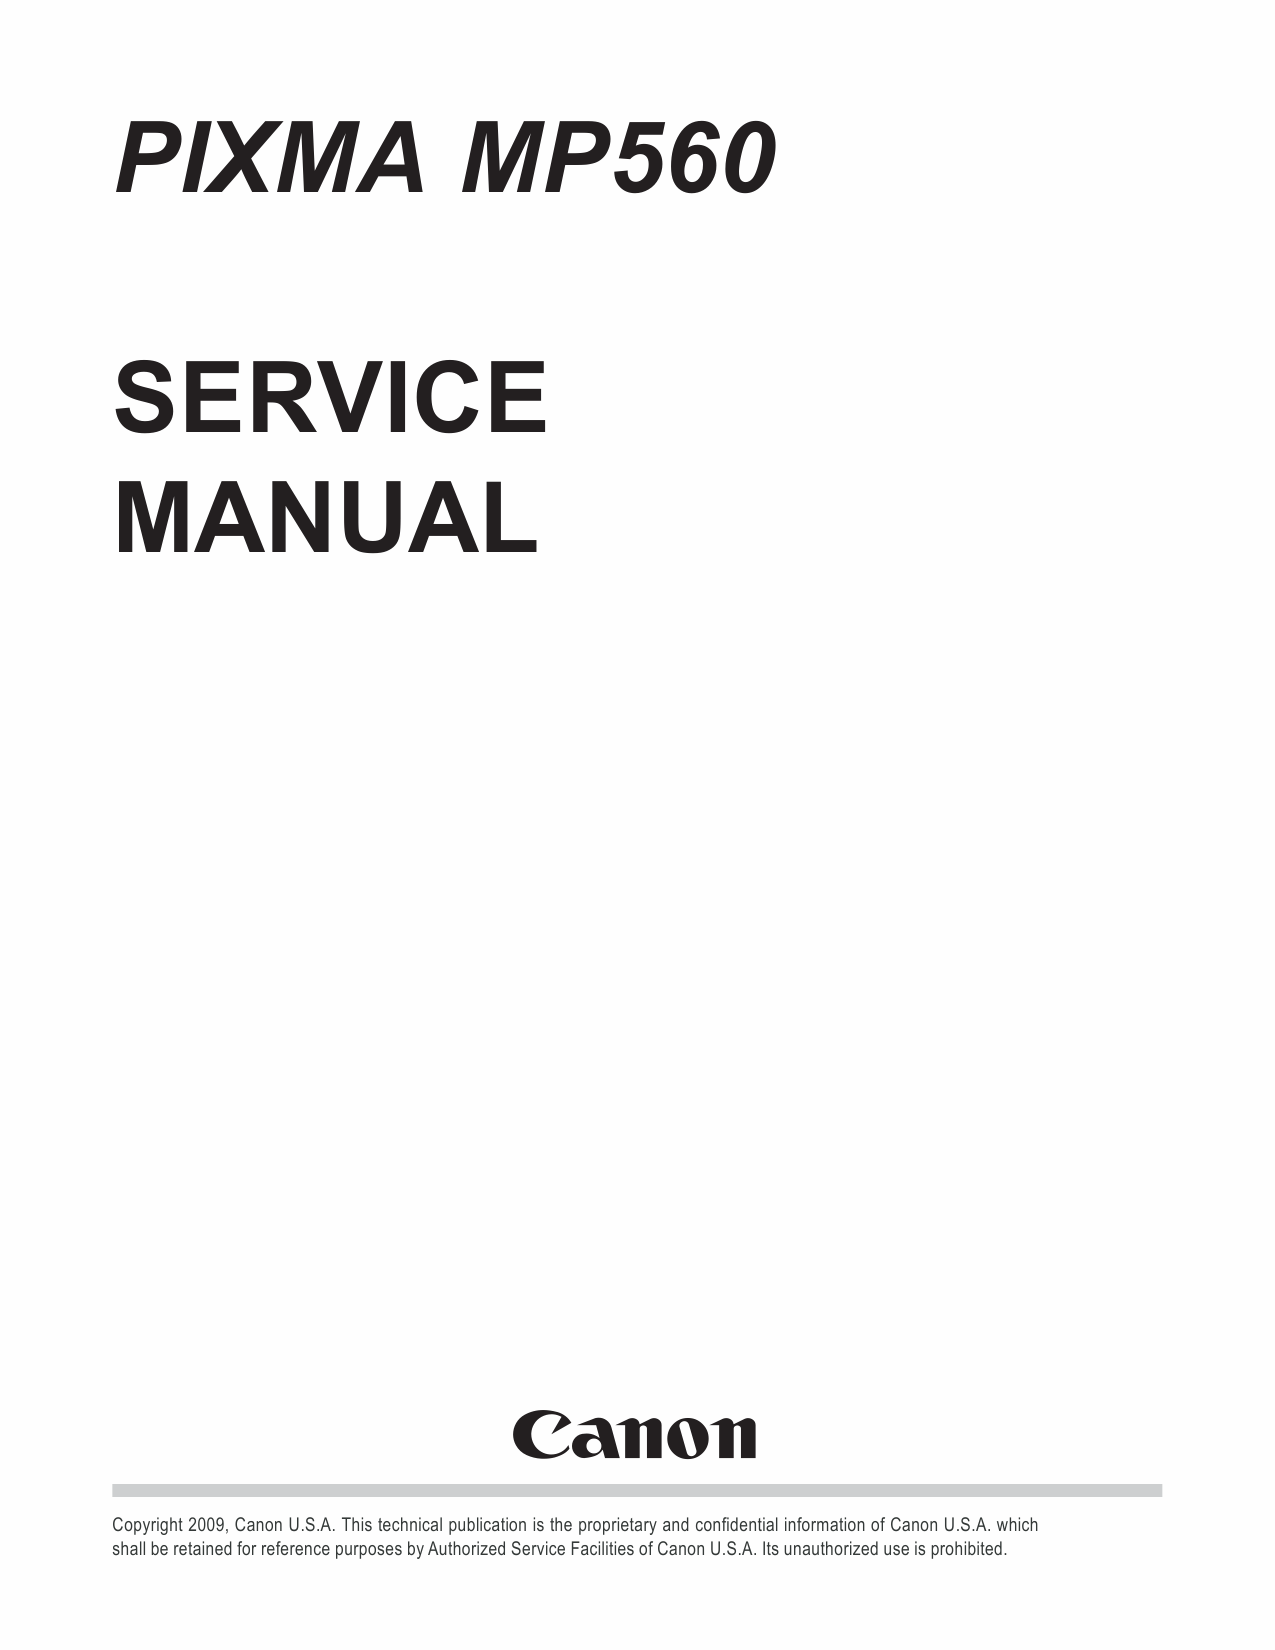 Canon PIXMA MP560 Service Manual-1